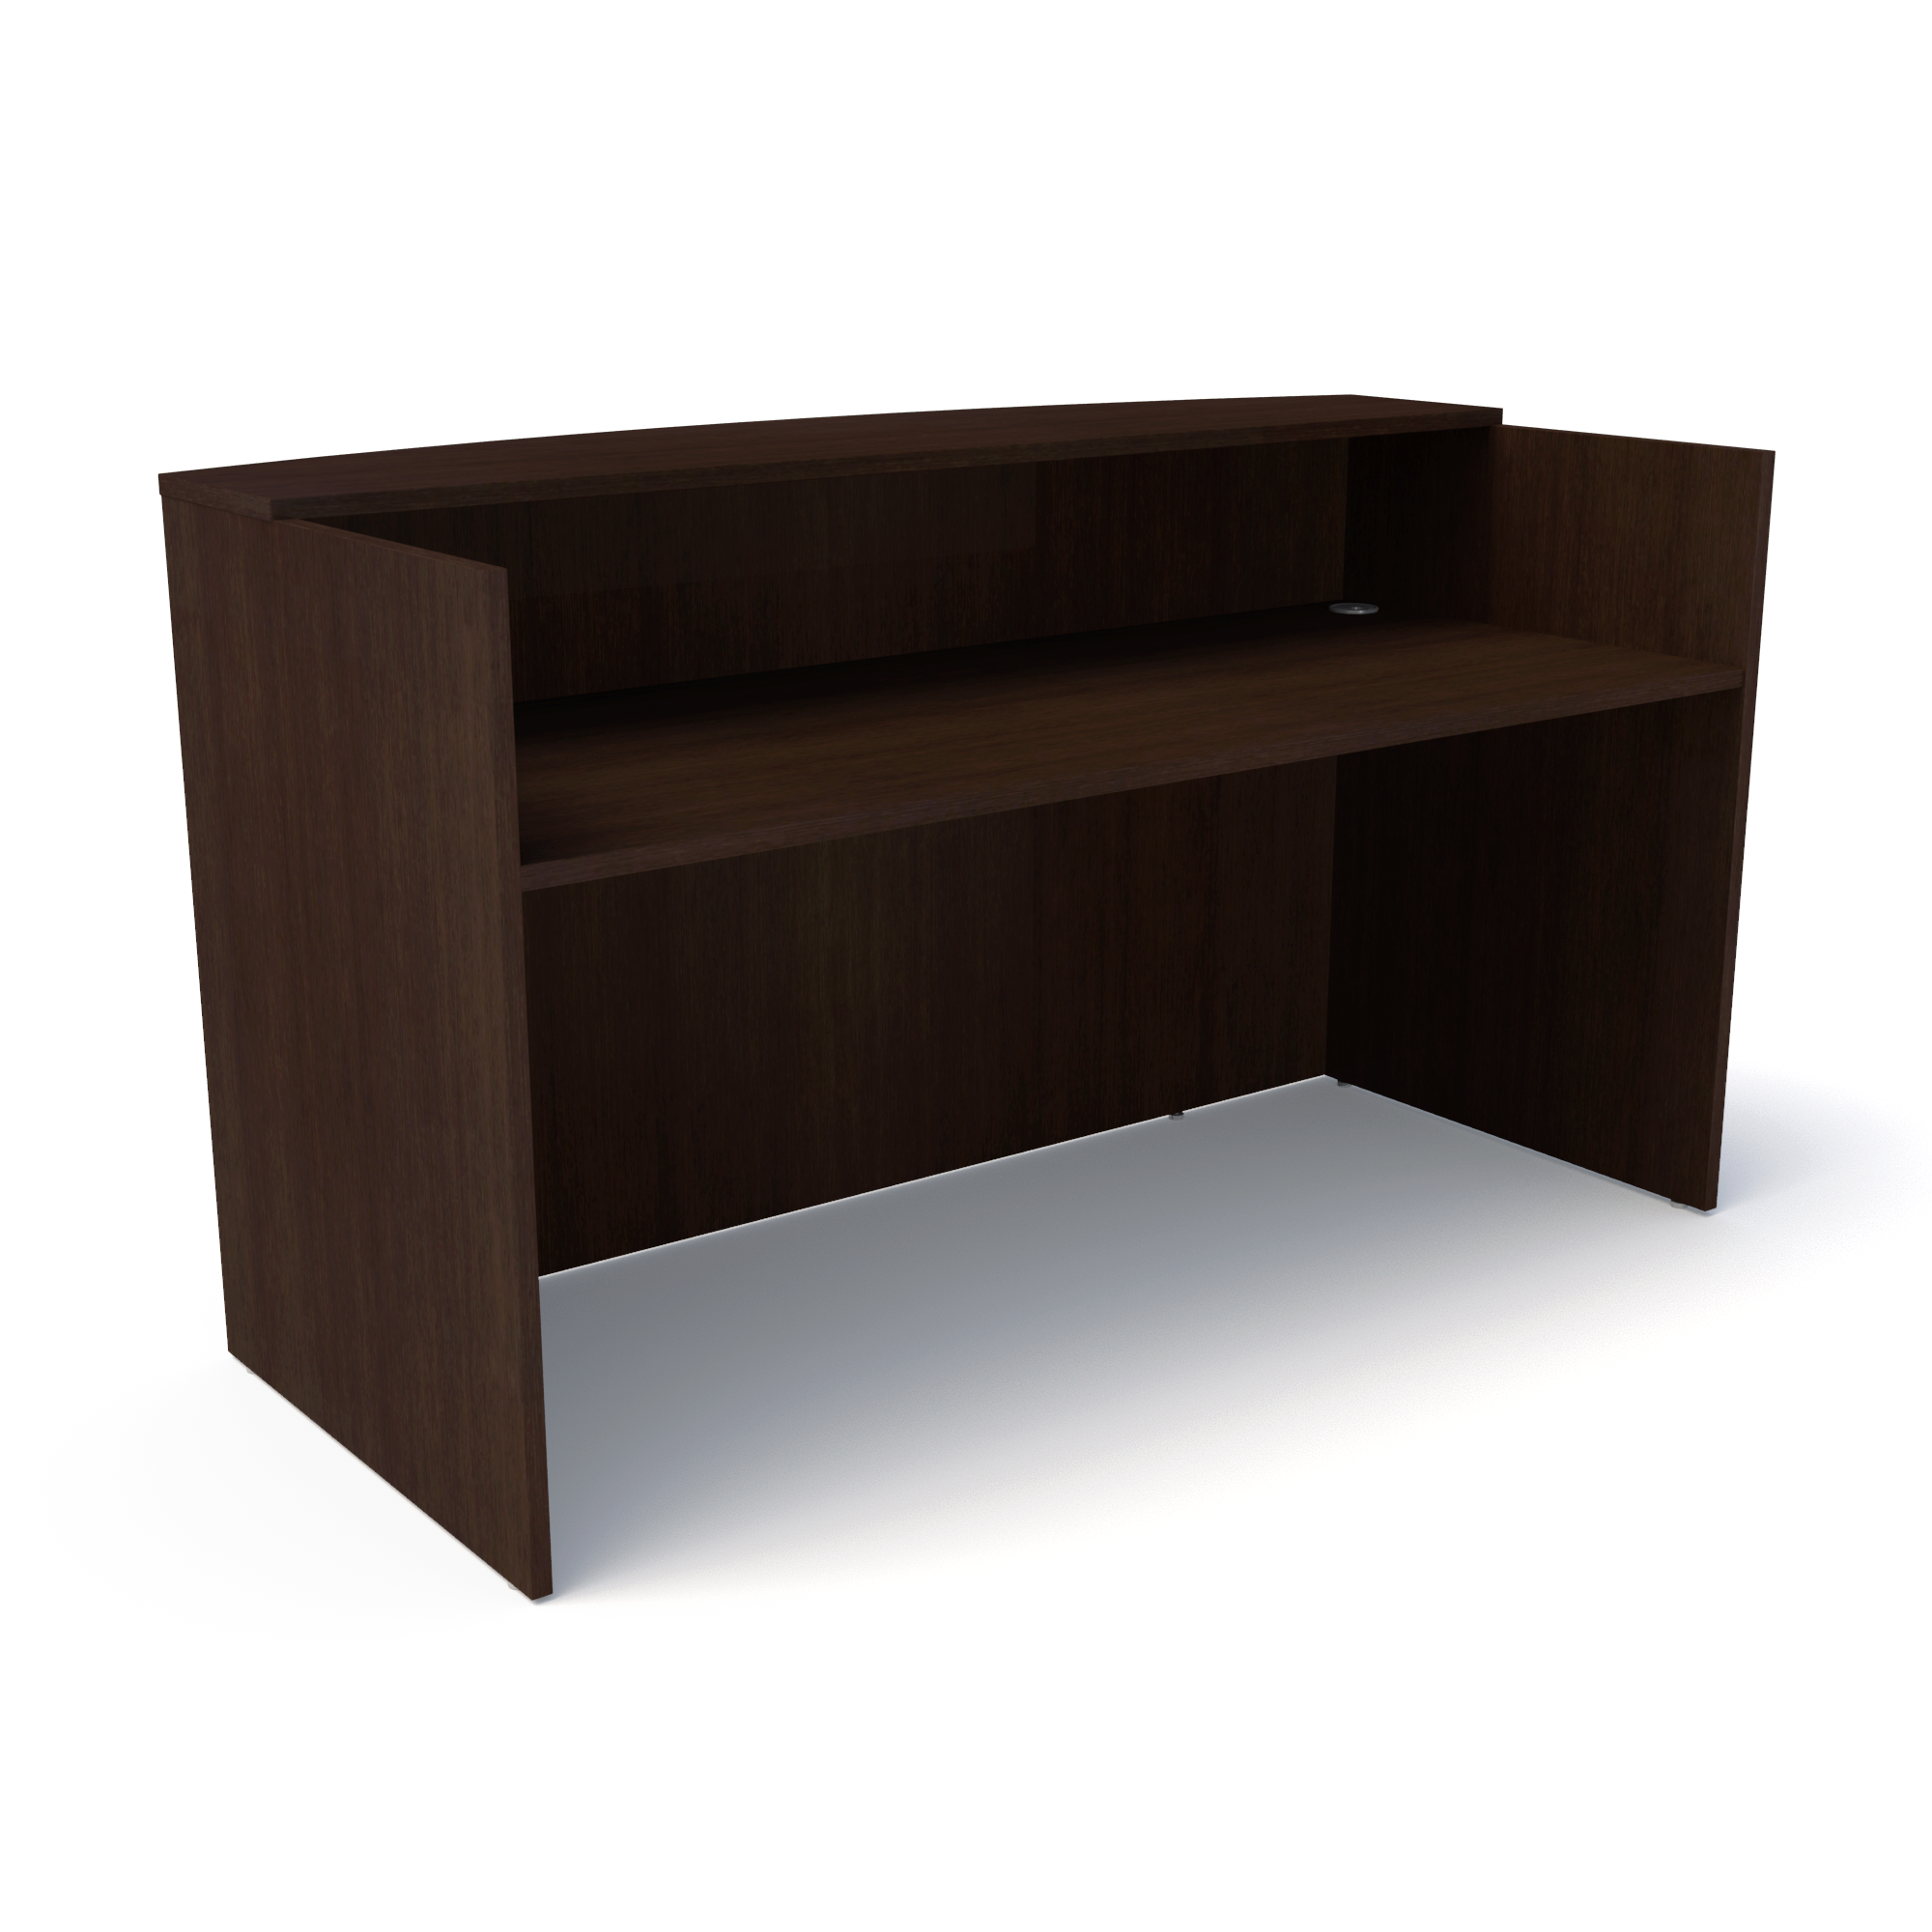 Compel Pivit Reception Desk - New